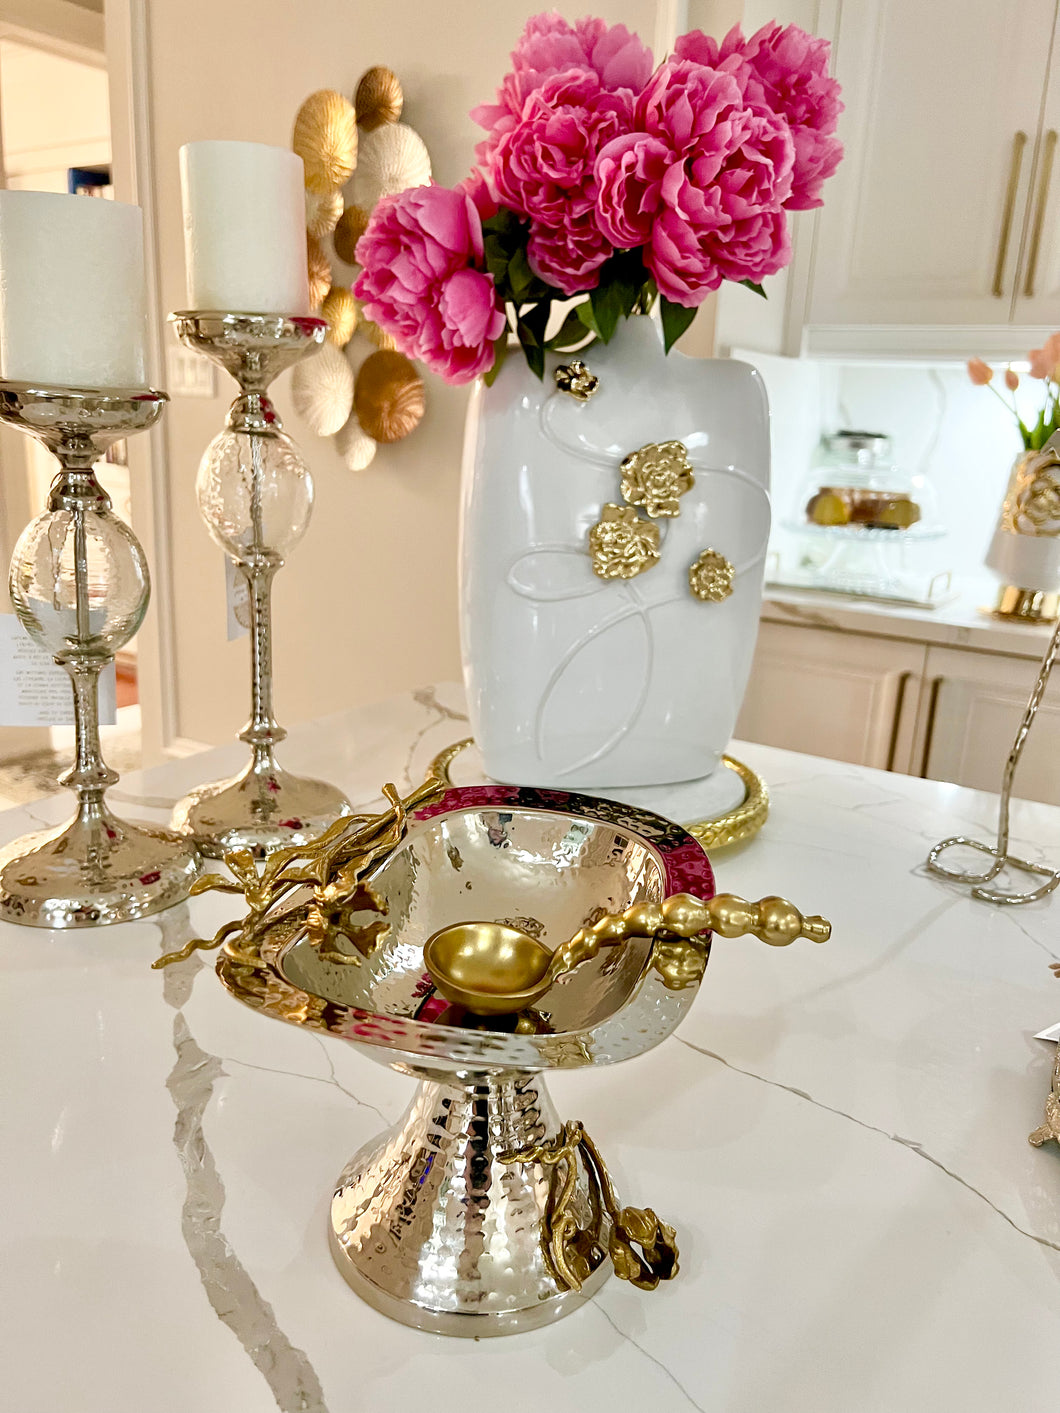 Aluminum Hammered Pedestal Bowl w/ Gold Floral Stems